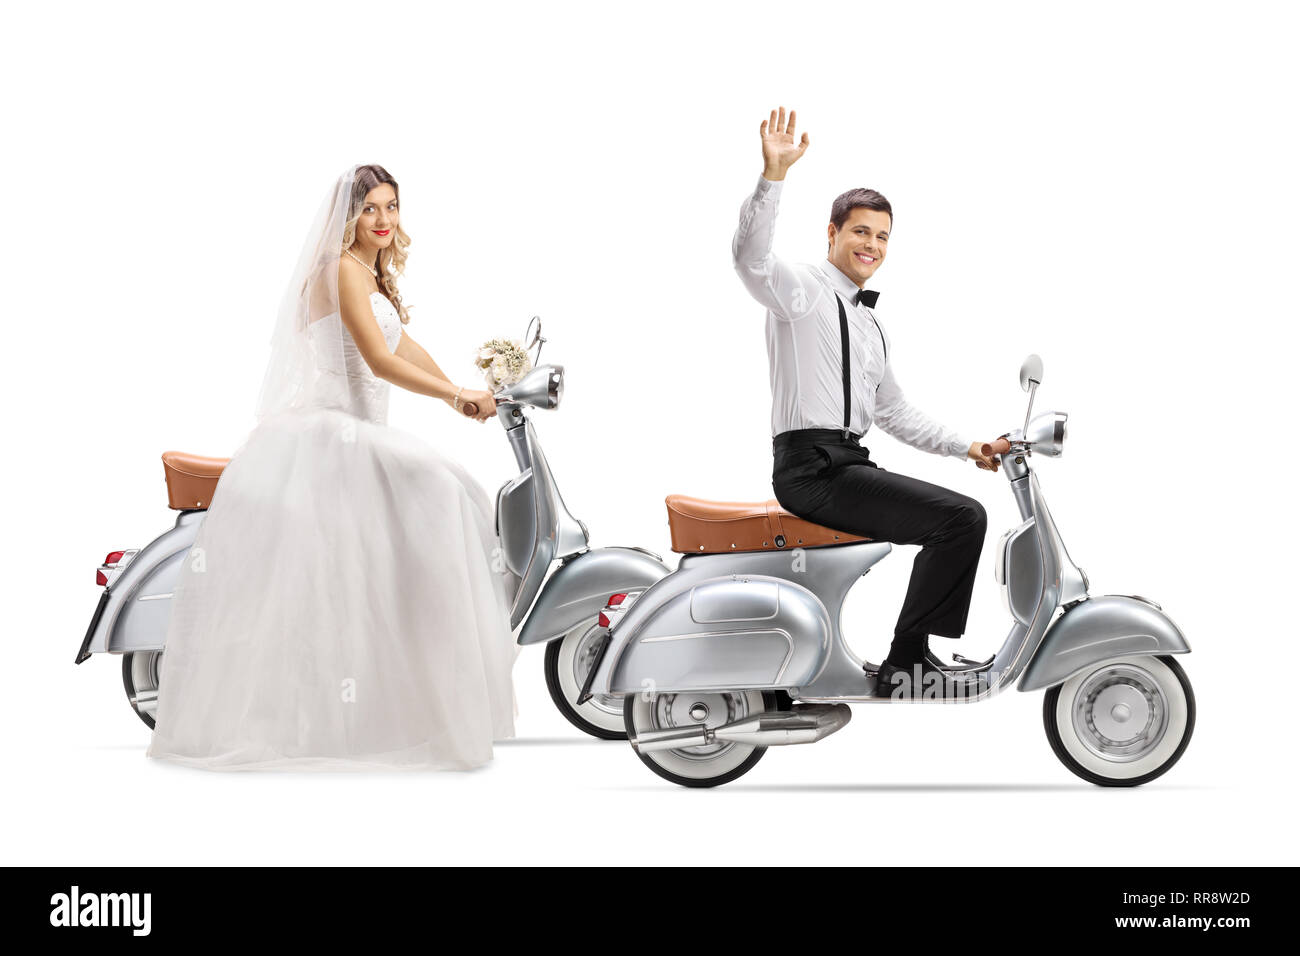 Toute la longueur de la Bride and Groom riding scooters vintage et forme isolé sur fond blanc Banque D'Images